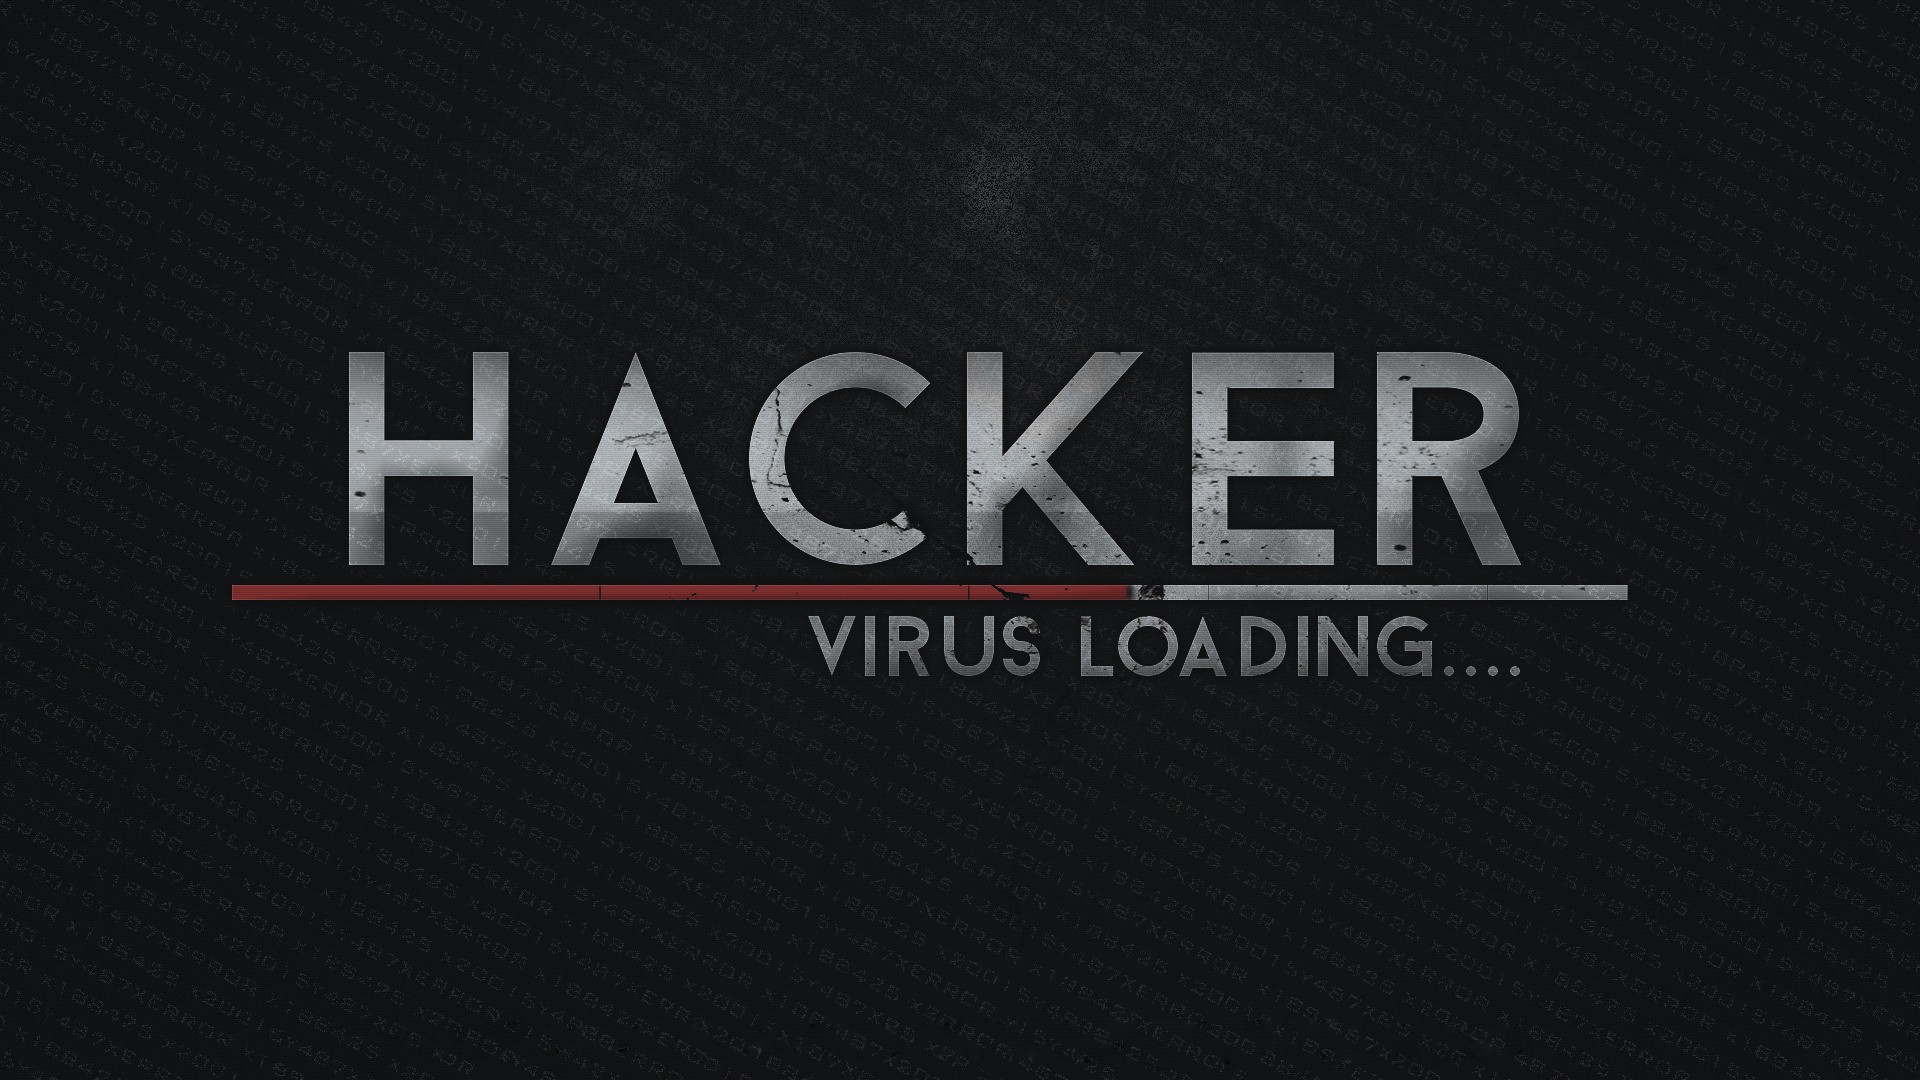 Hacking Hackers Computer Typography Humor 1920x1080